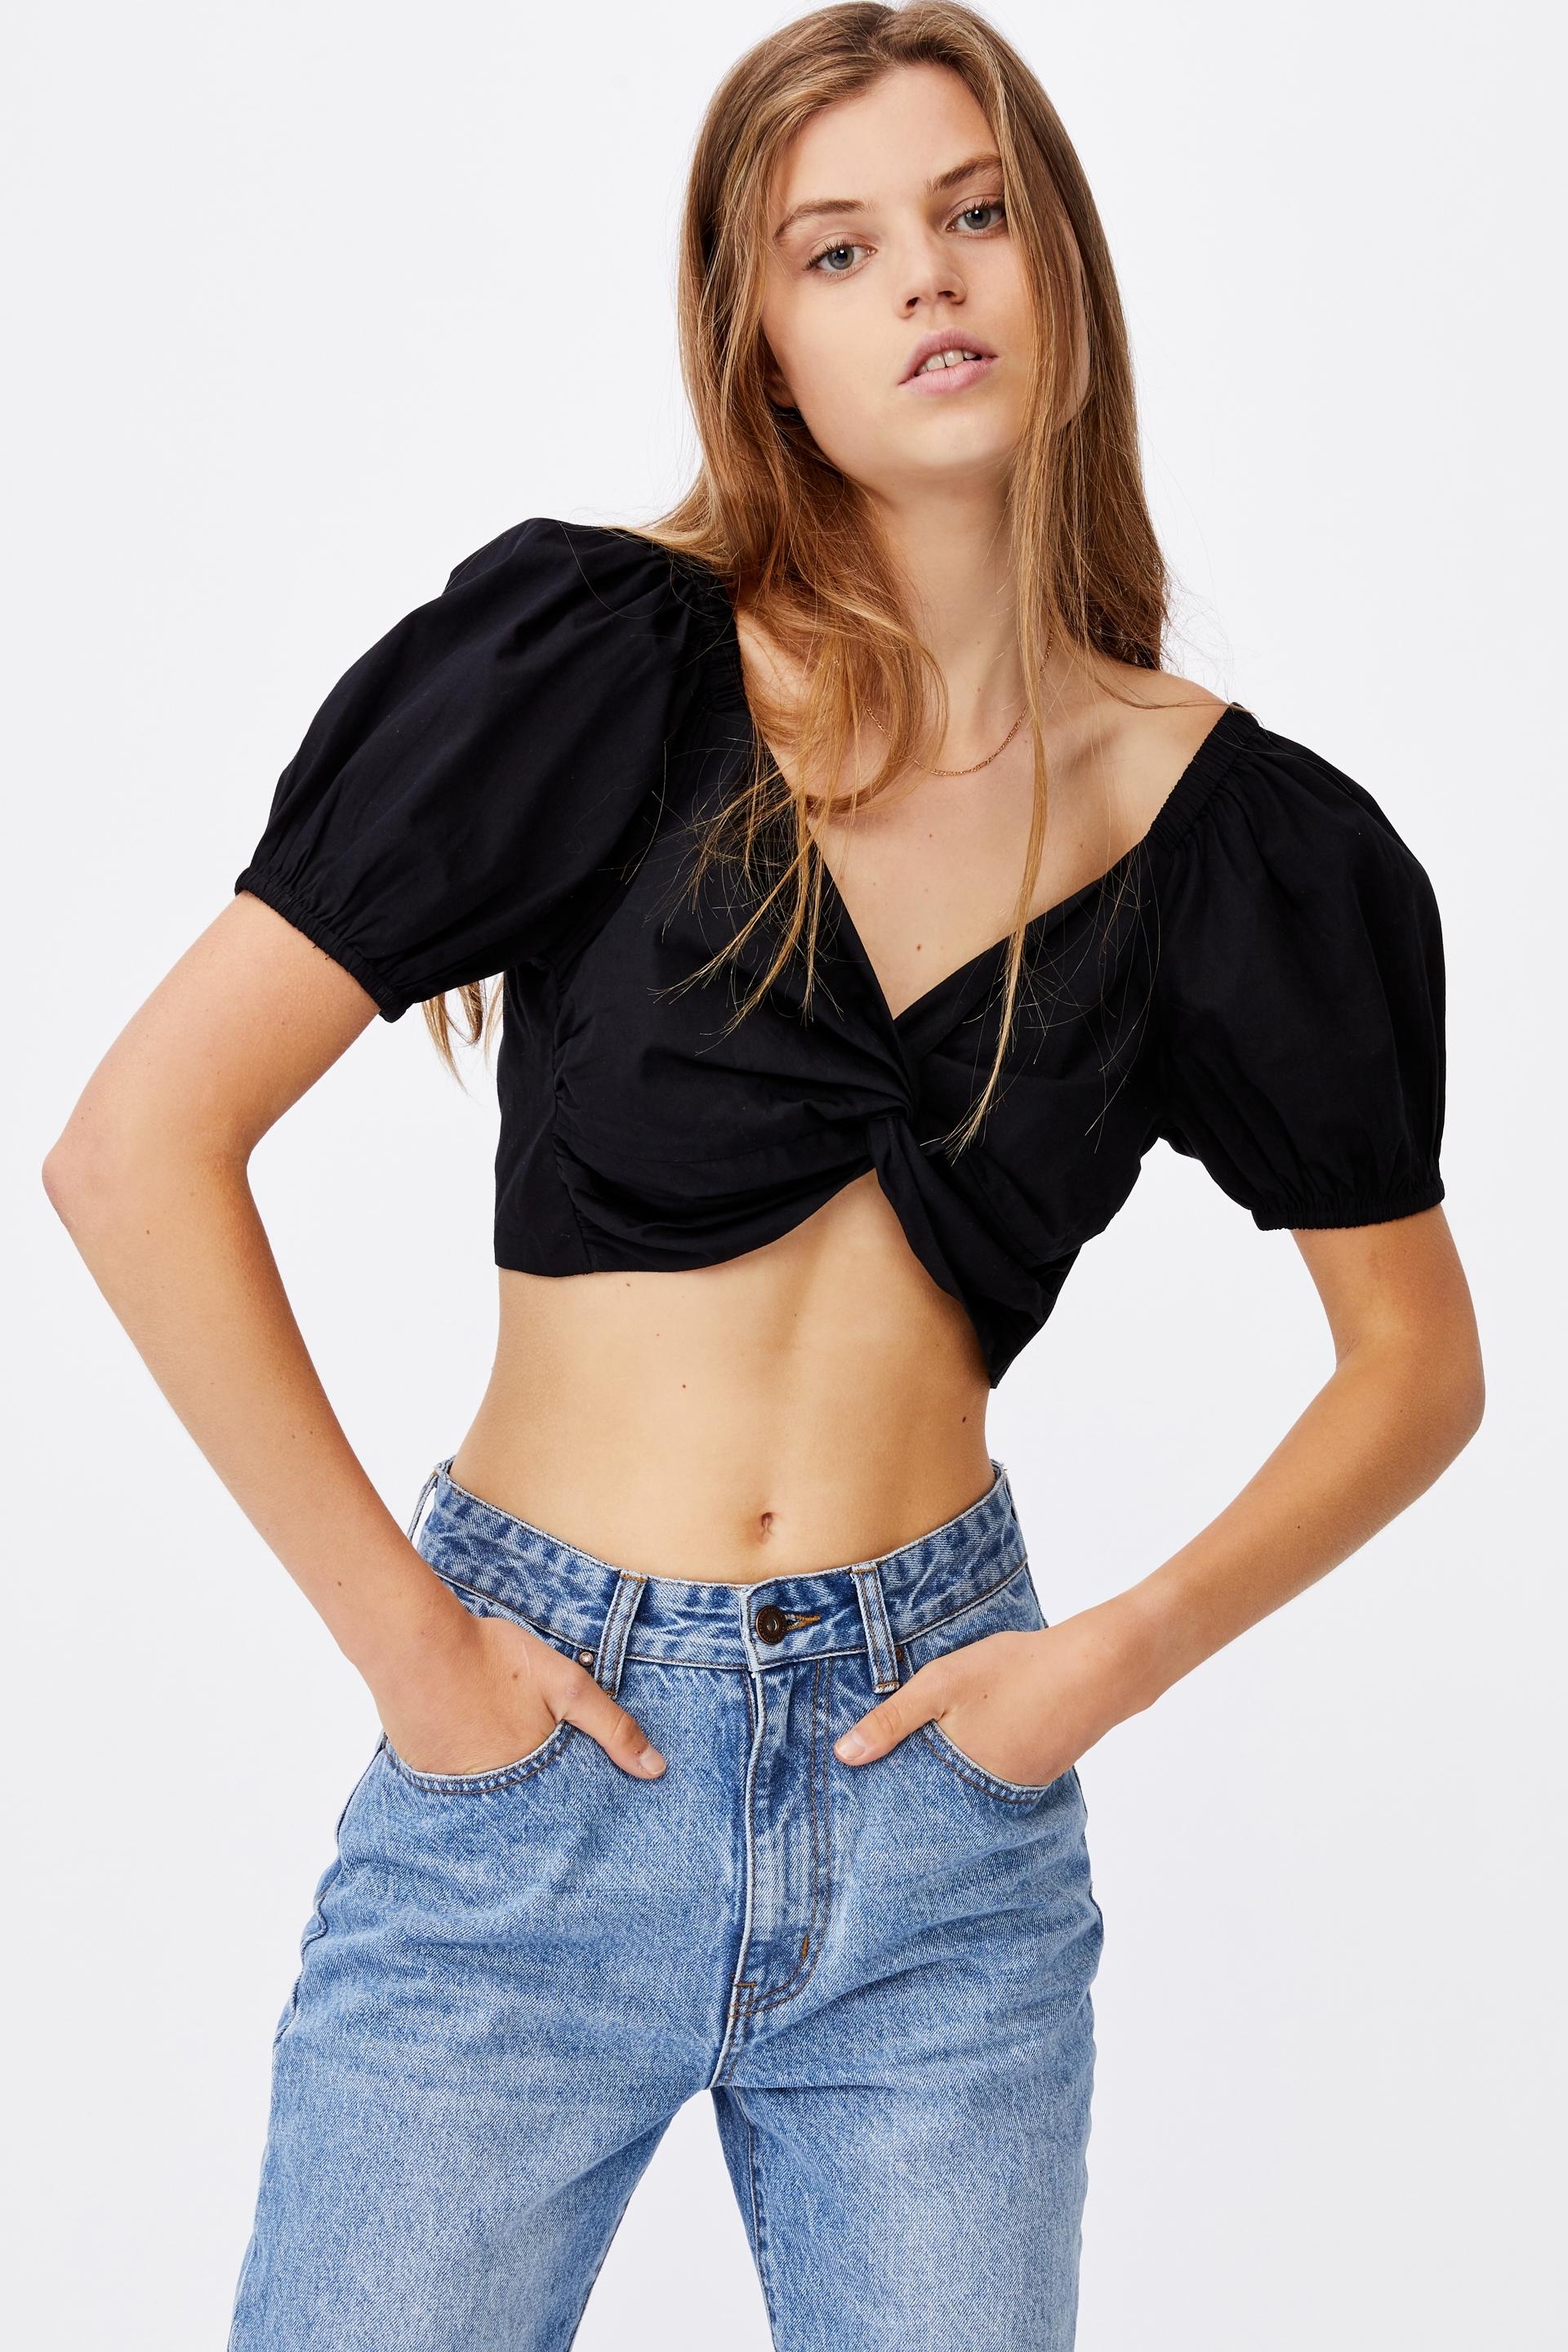 Lola twist front blouse - black Cotton On Blouses | Superbalist.com